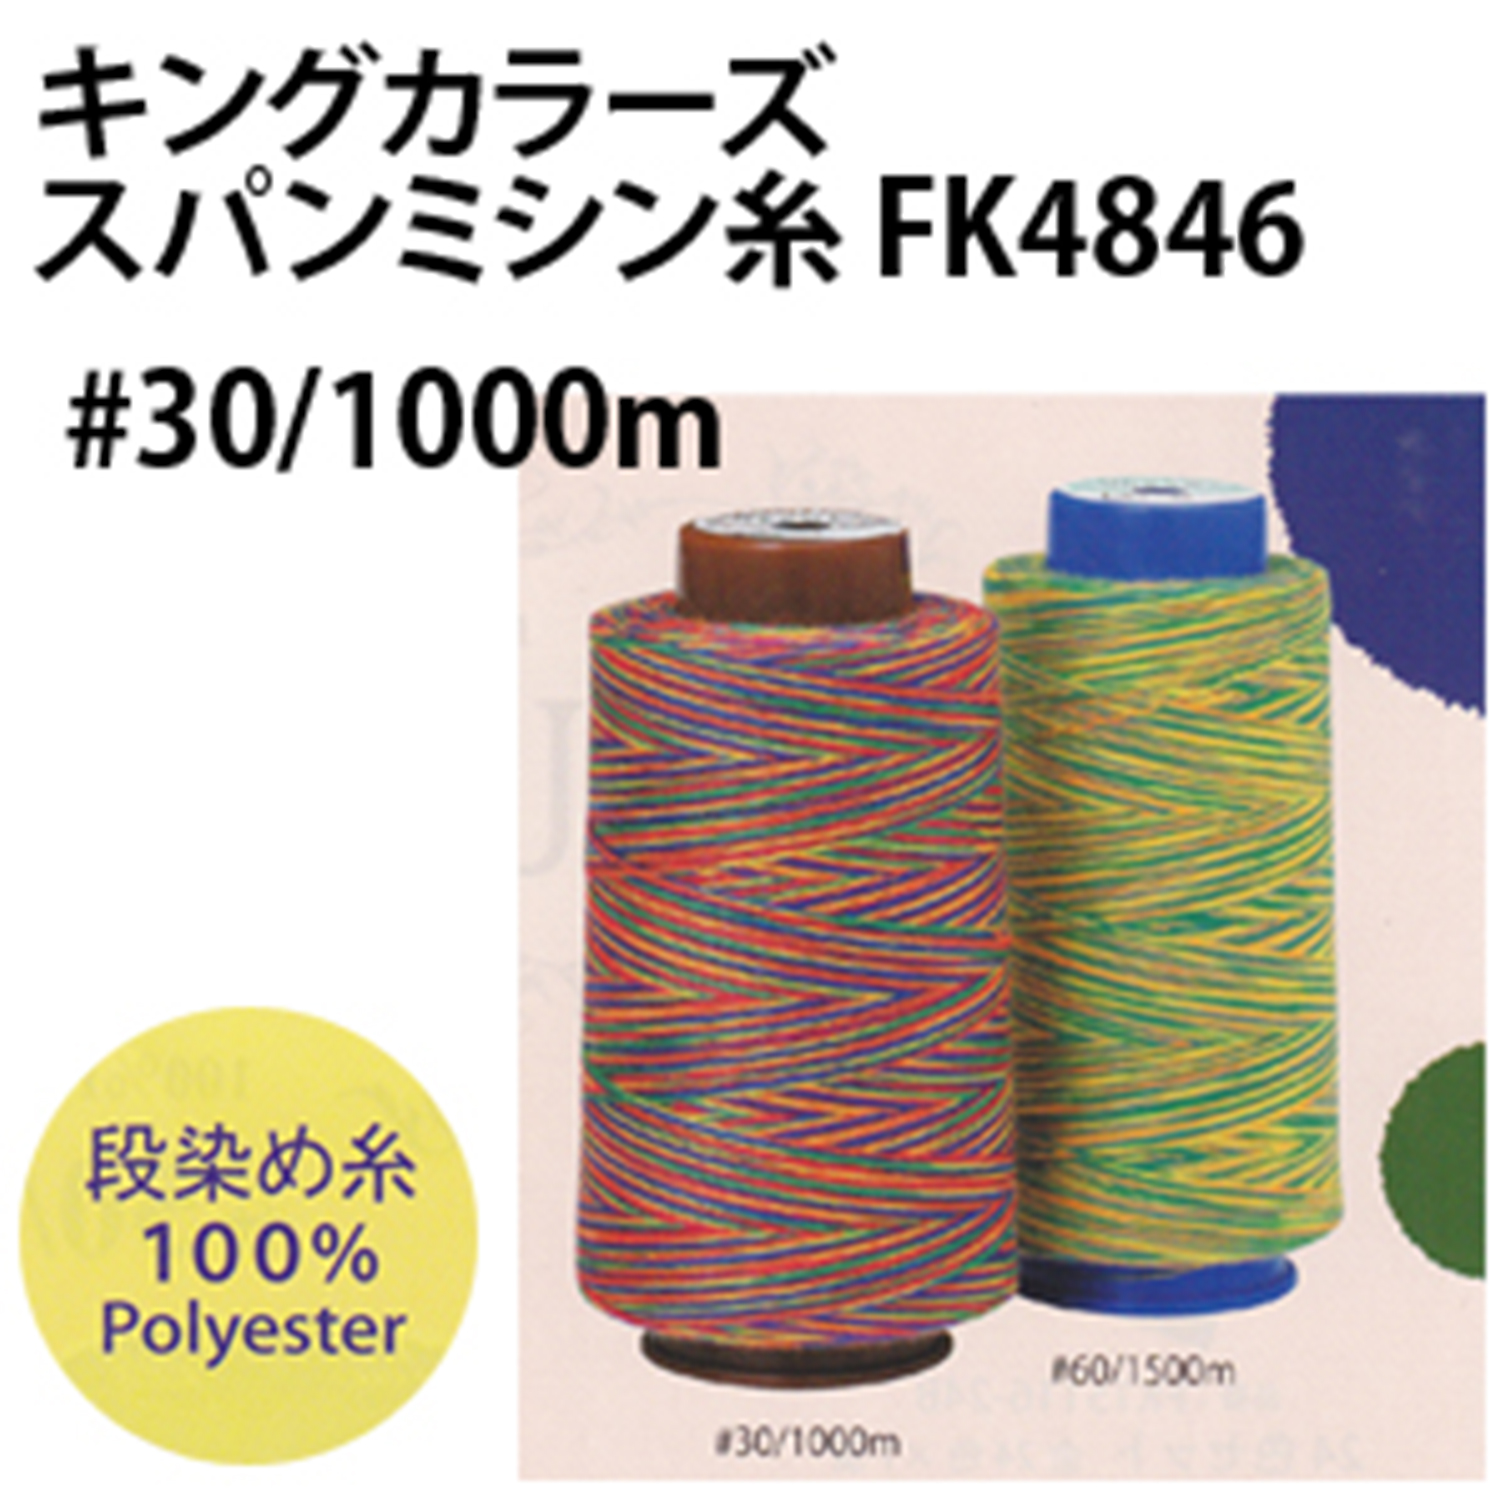 FK4846 キングカラーズスパンミシン糸 30/1000m (本)